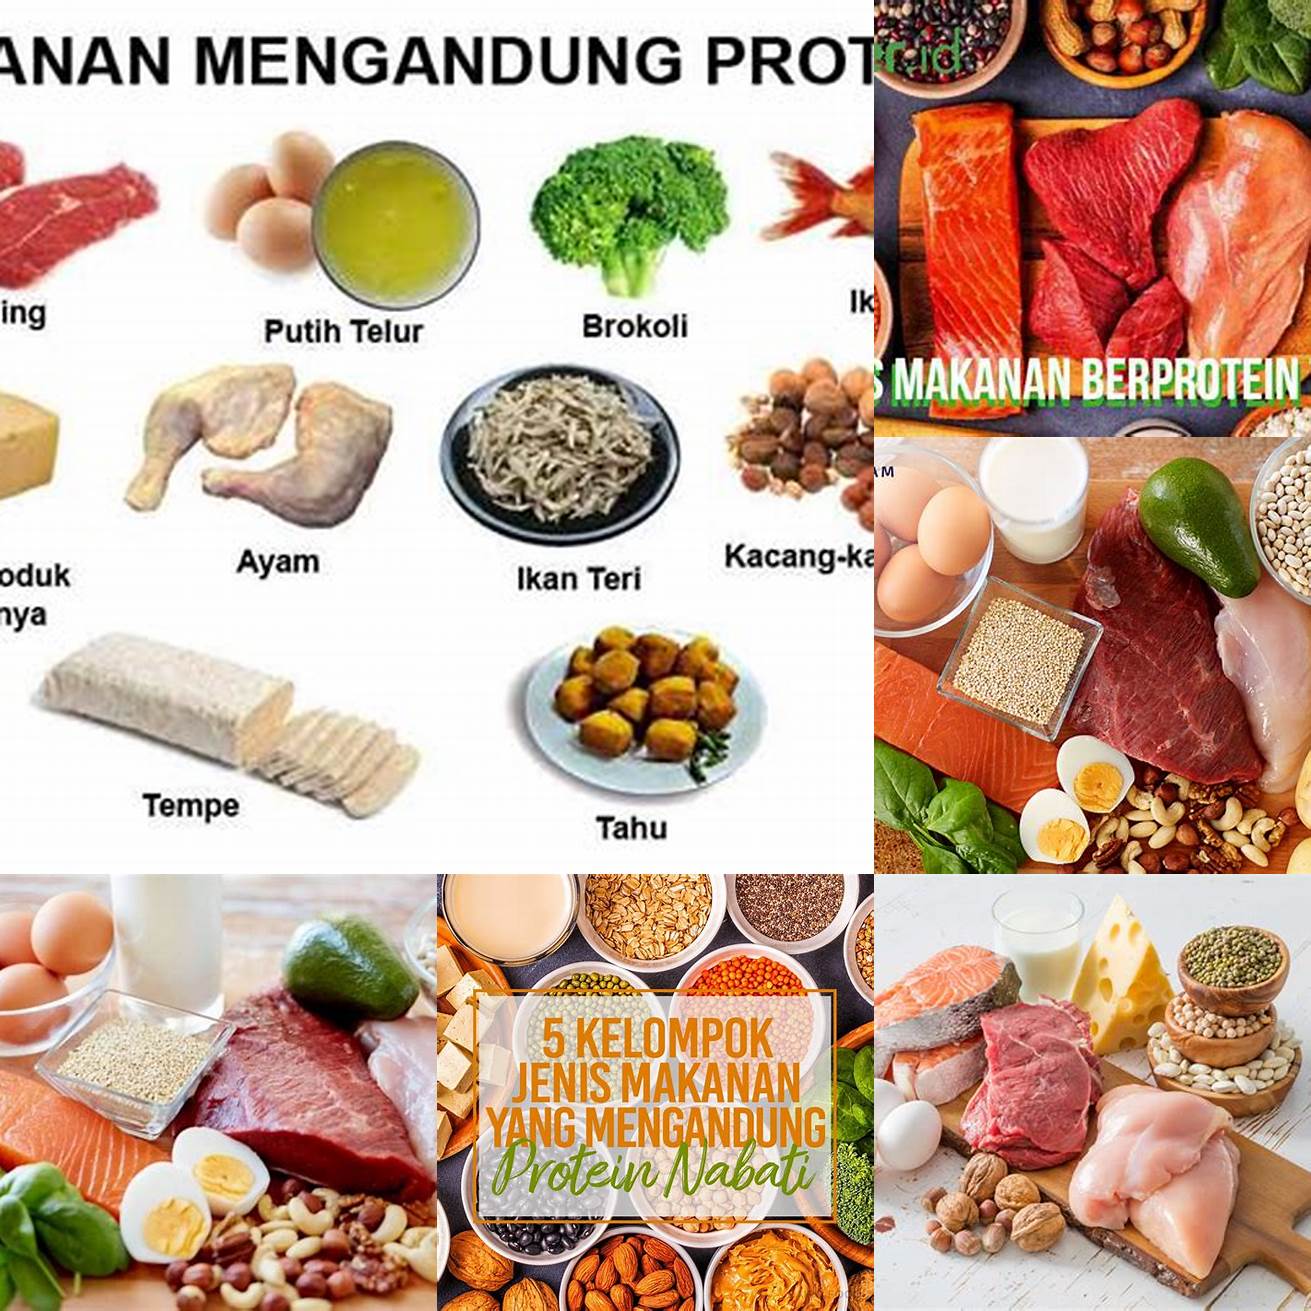 Mengonsumsi makanan yang mengandung protein tinggi